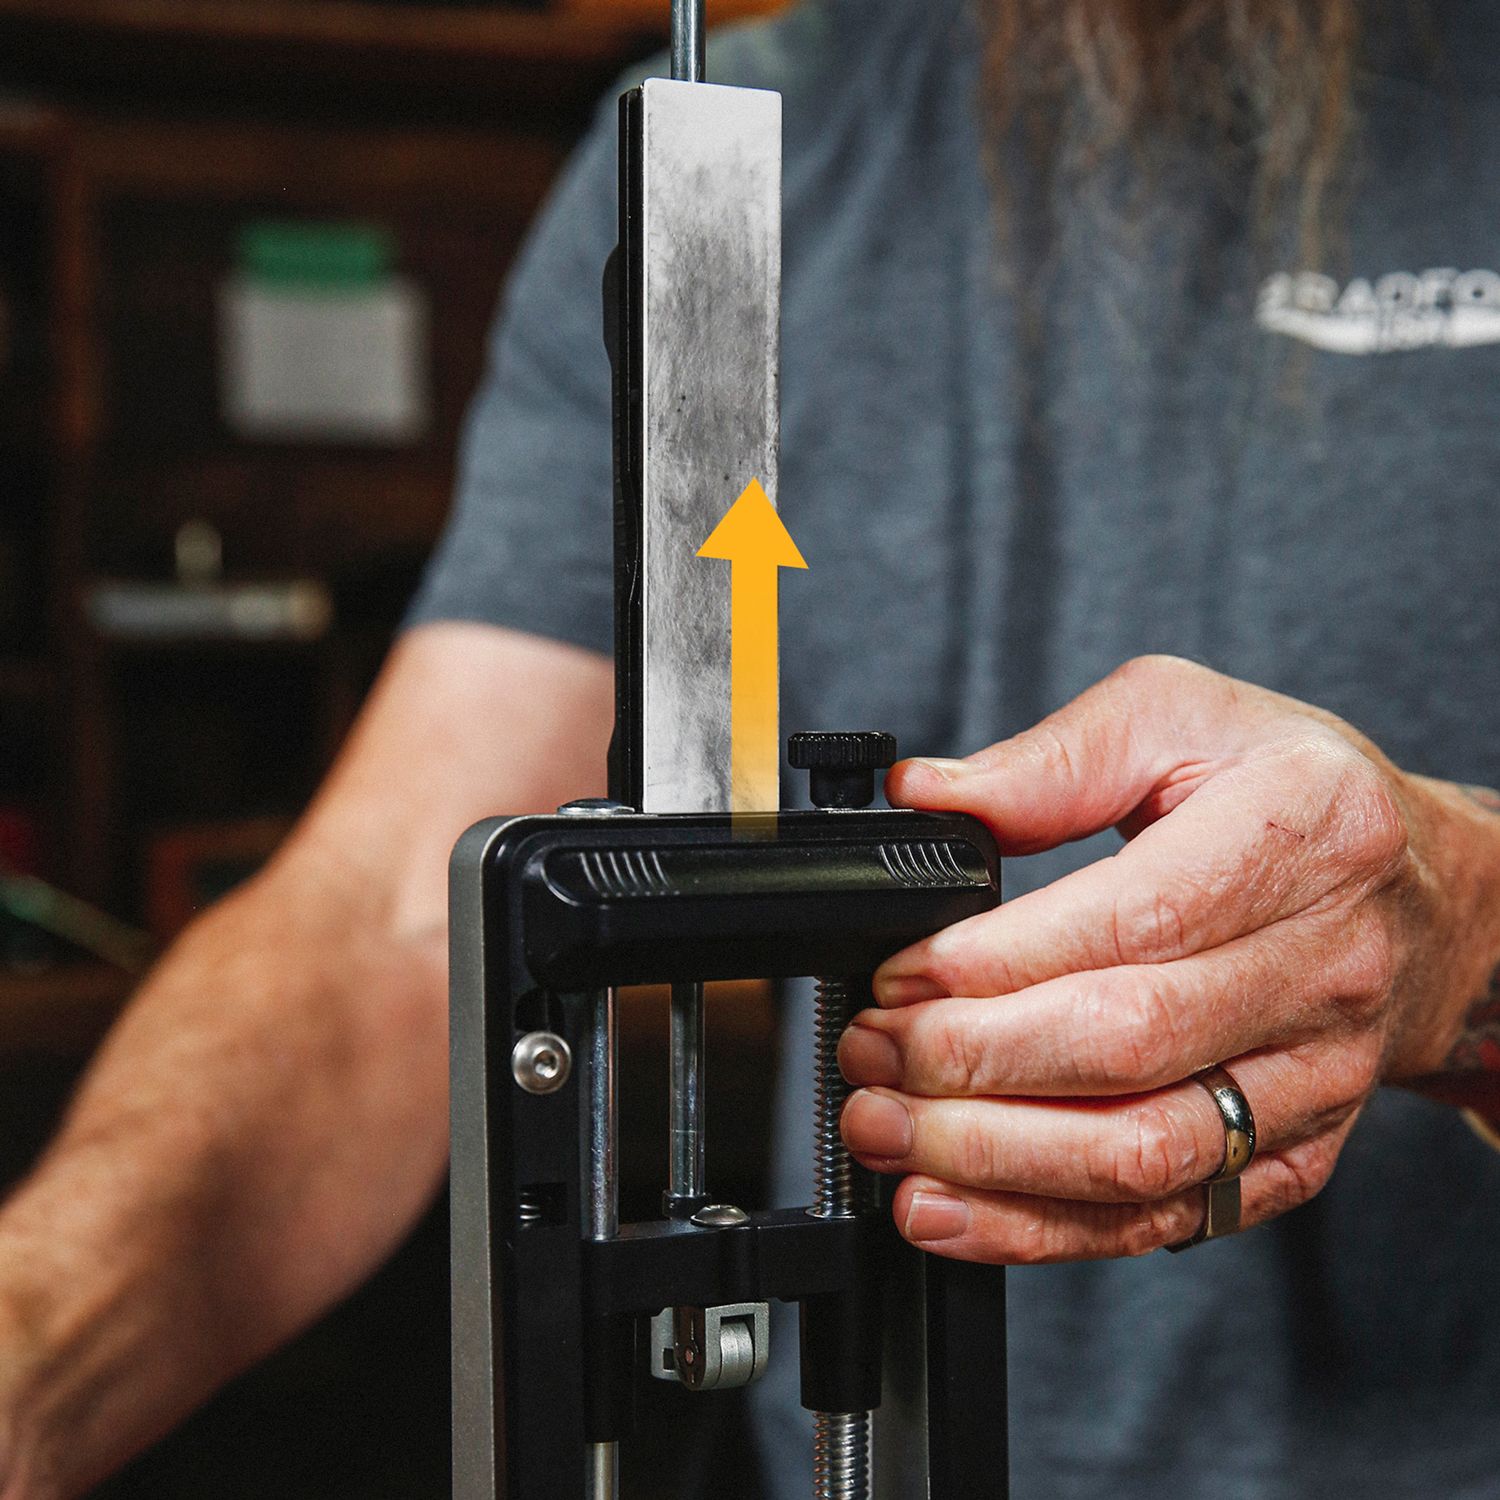 Work Sharp Professional Precision Adjust Knife Sharpener